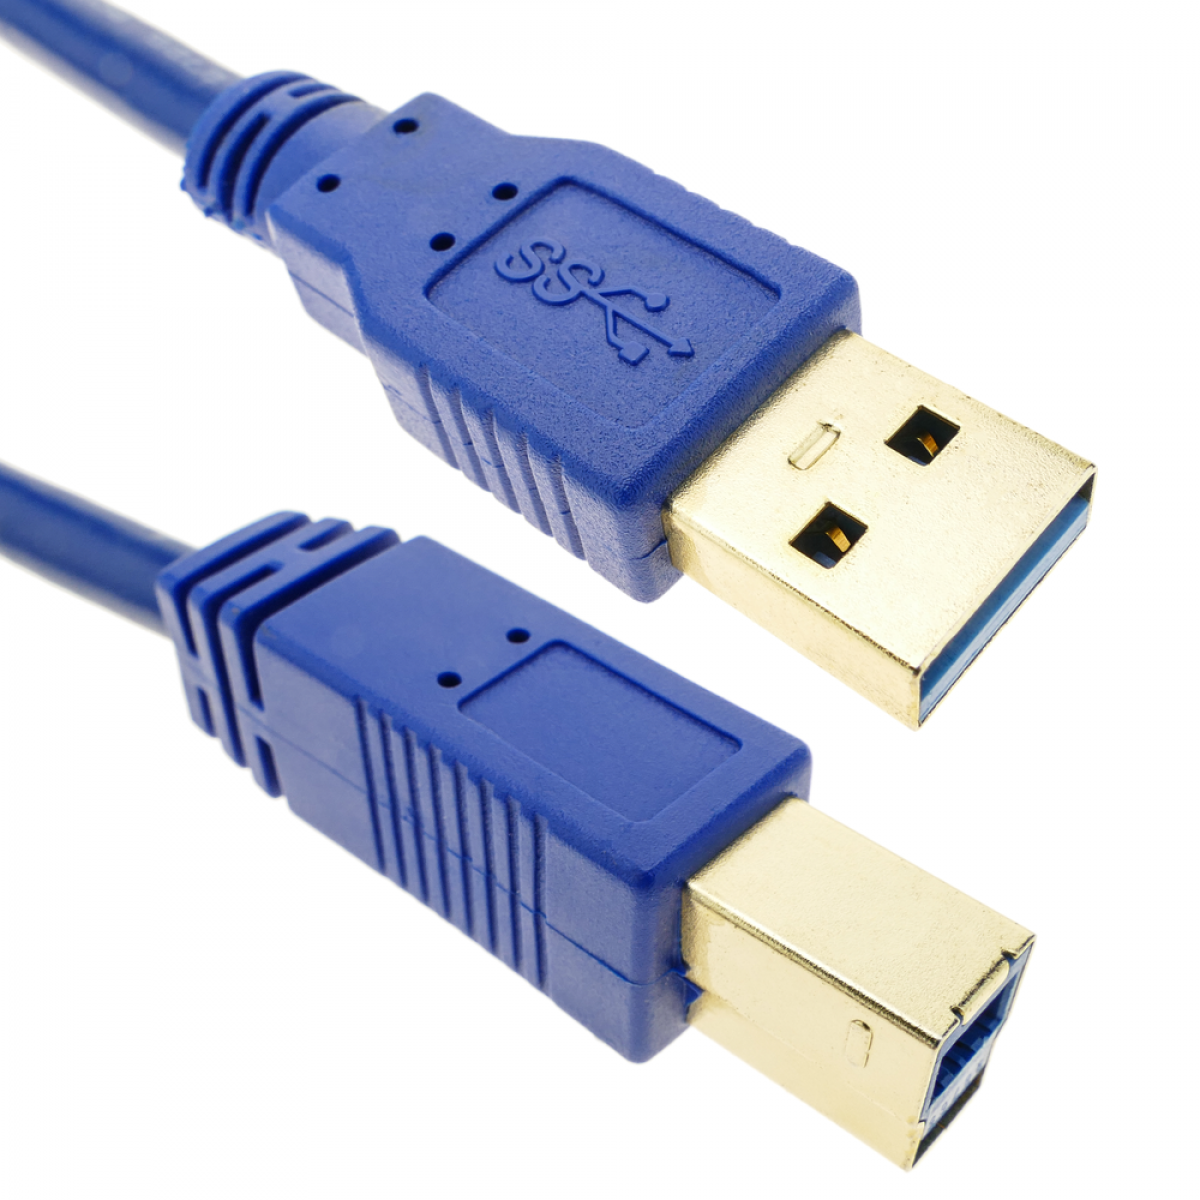 Bematik - Super Cable USB 3.0 Un mâle à B mâle 1m - Clés USB